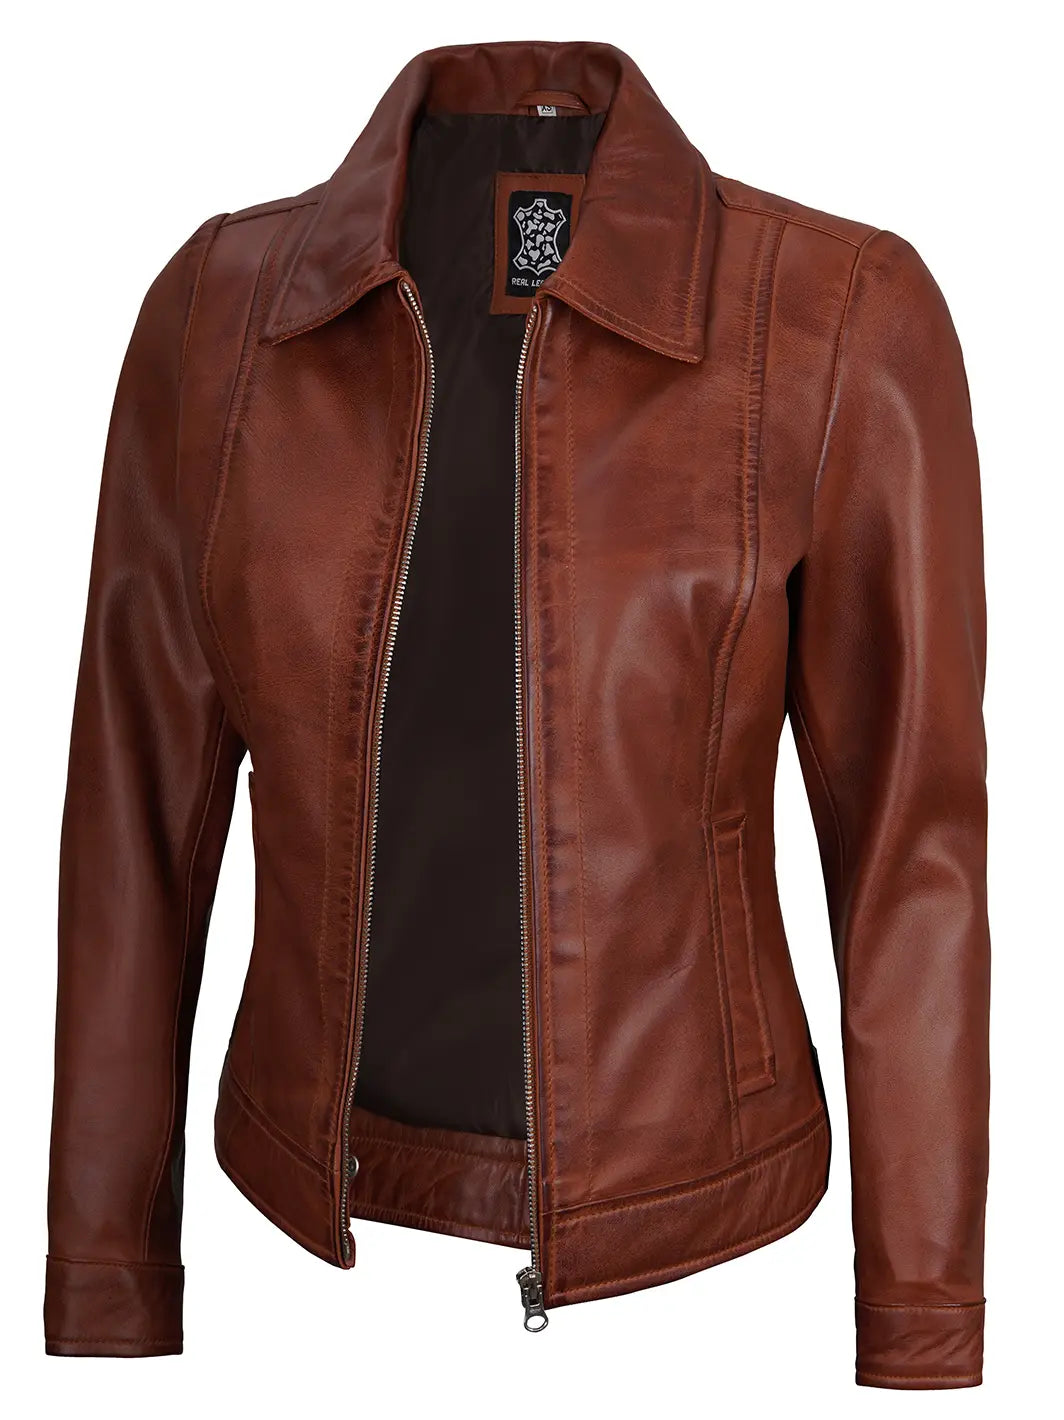 Cognac leather jacket